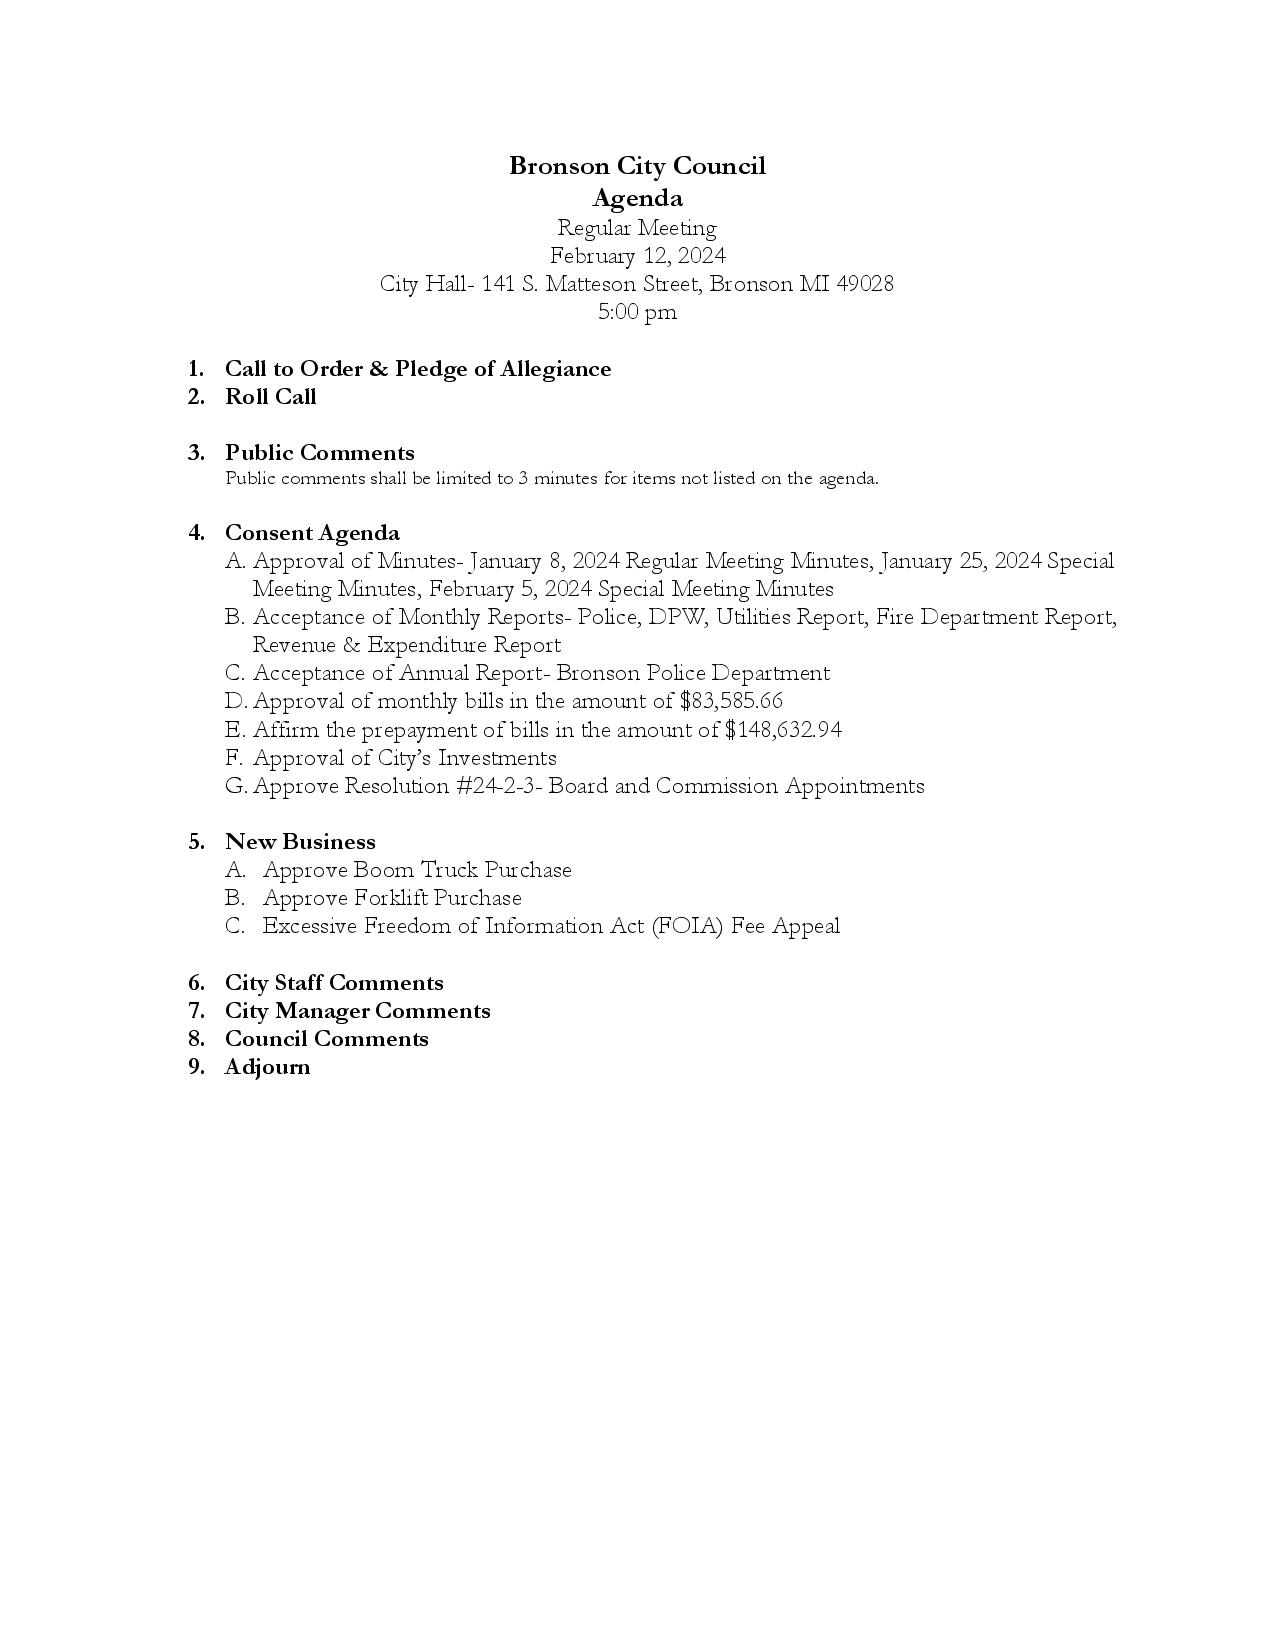 Council Agenda Feb. 12, 2024-page-001